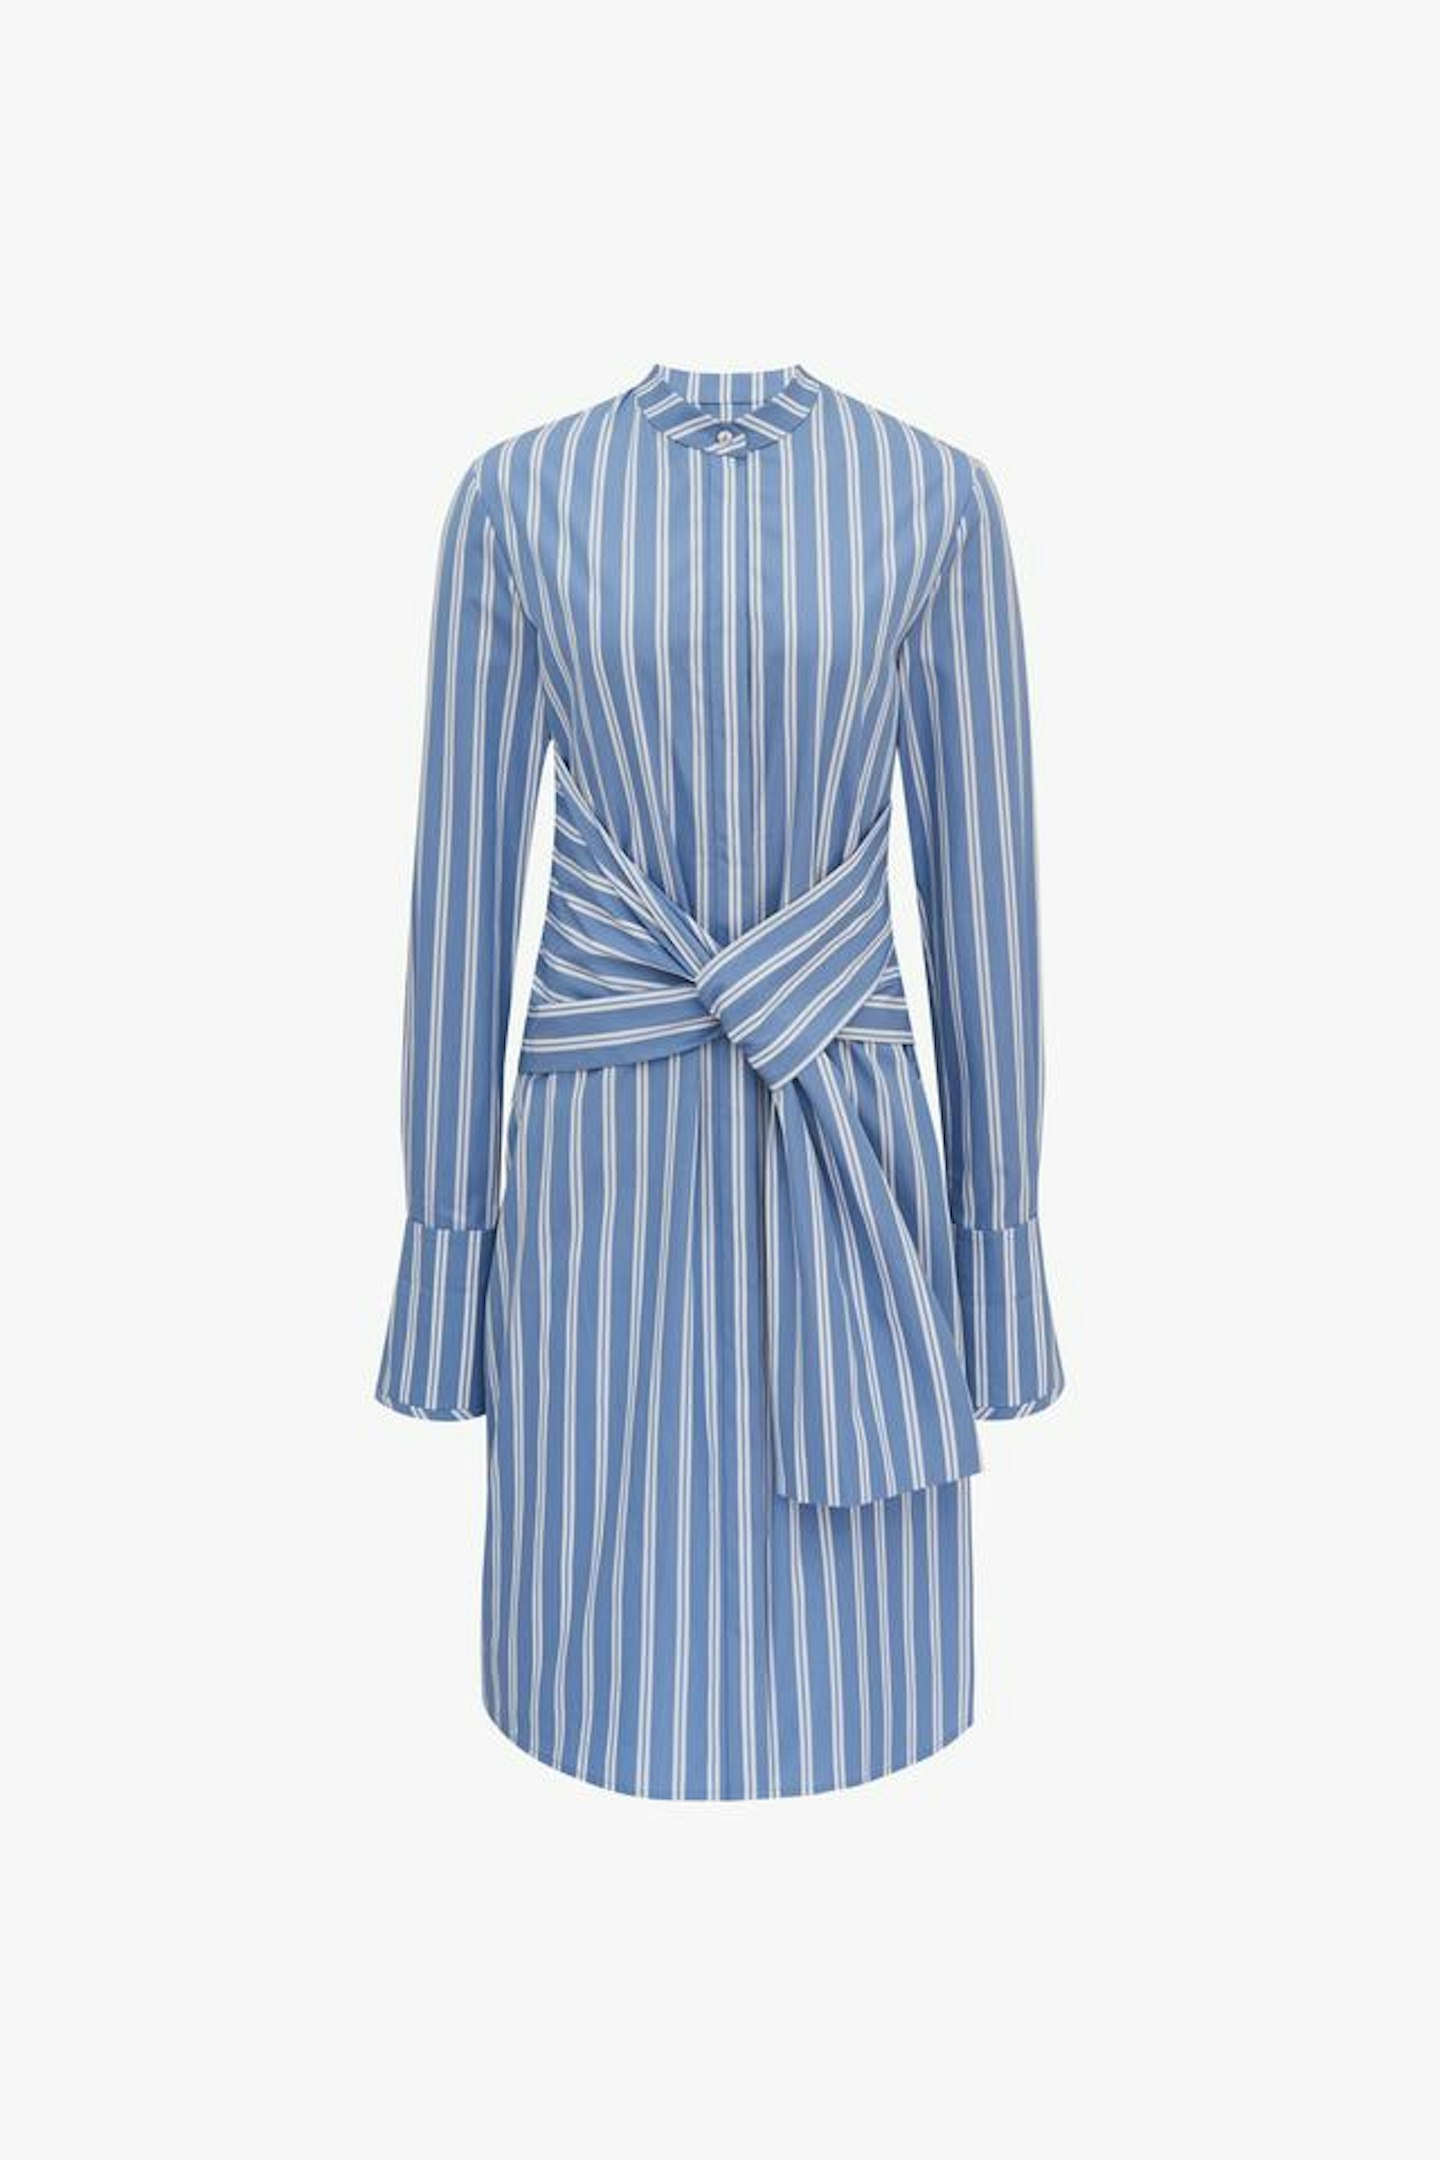 Victoria Victoria Beckham, Tie-Waist Shirt Dress In Blue Stripe, Was £290, Now £145